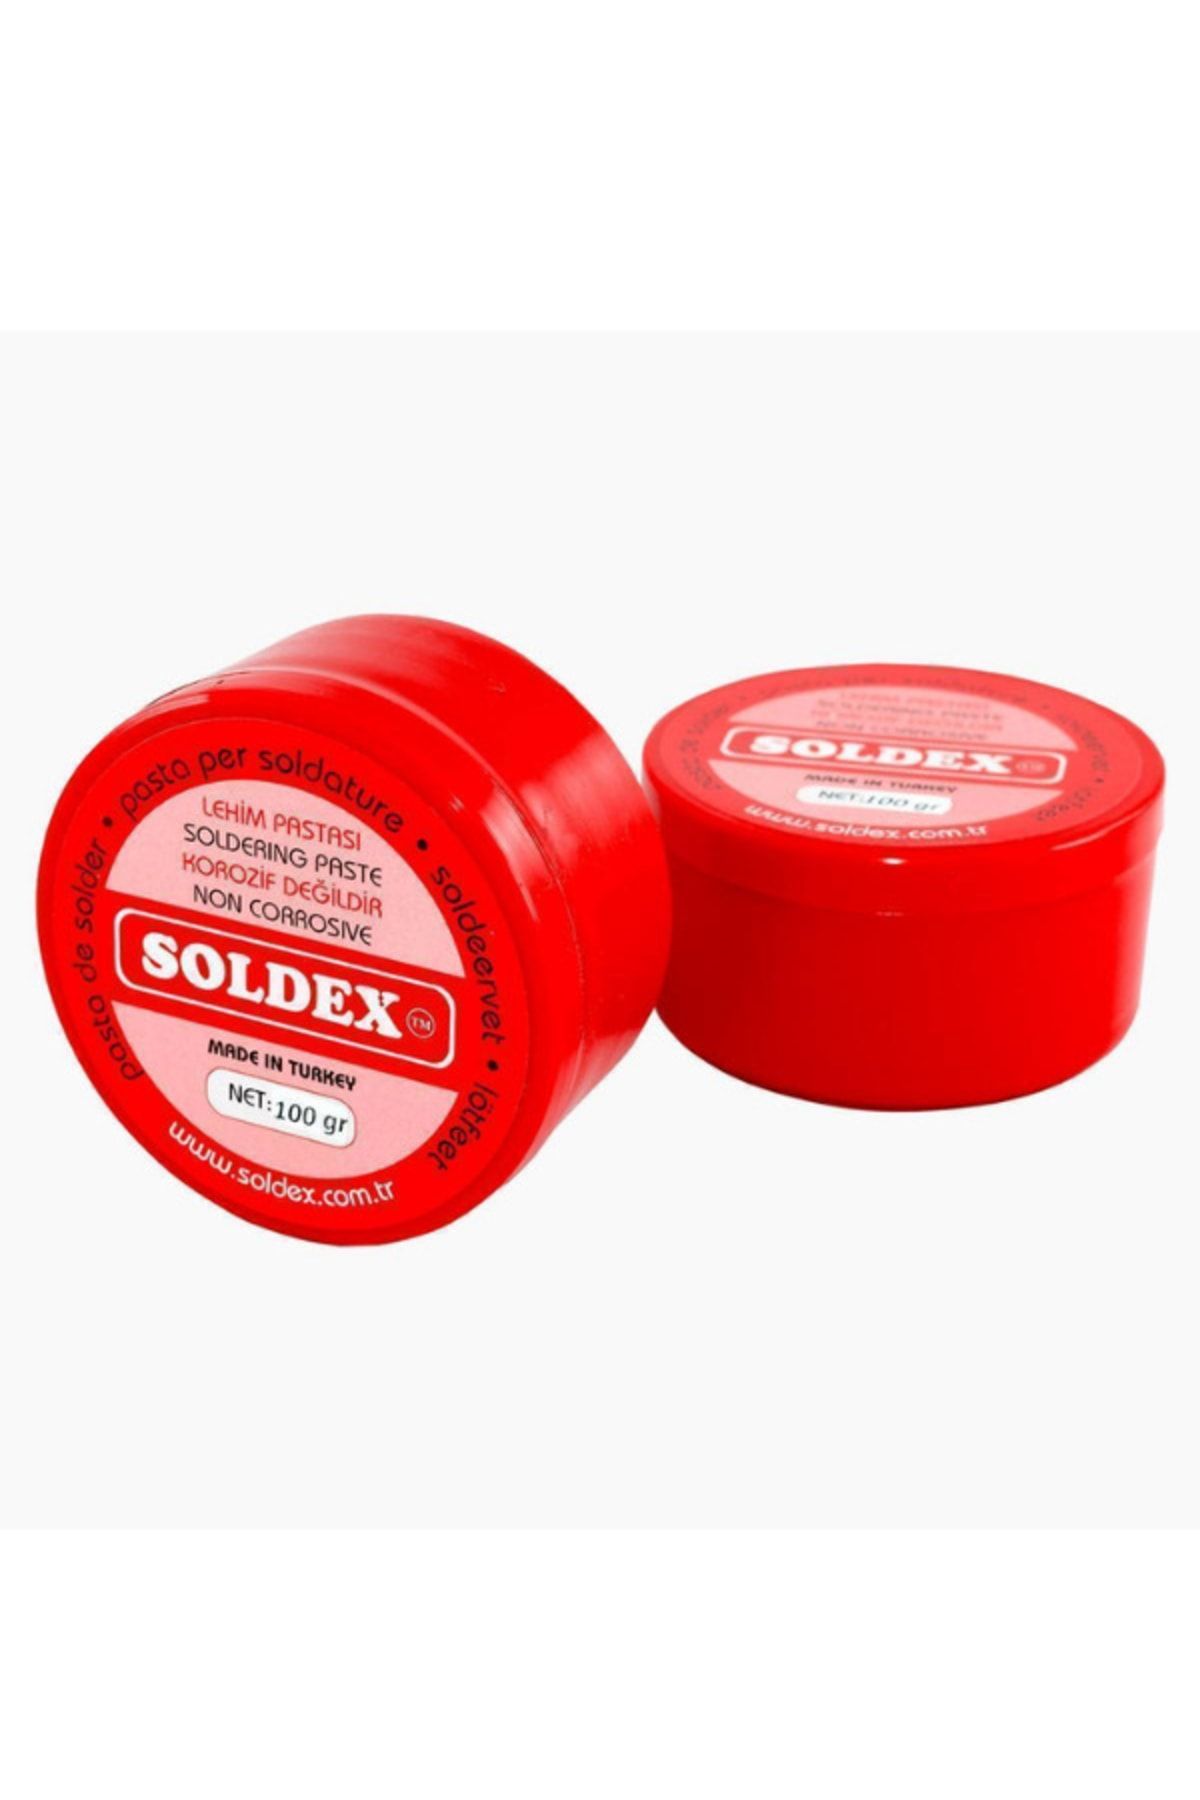 Soldex Lehim Pastası 100gram - Kargo Ücretsiz